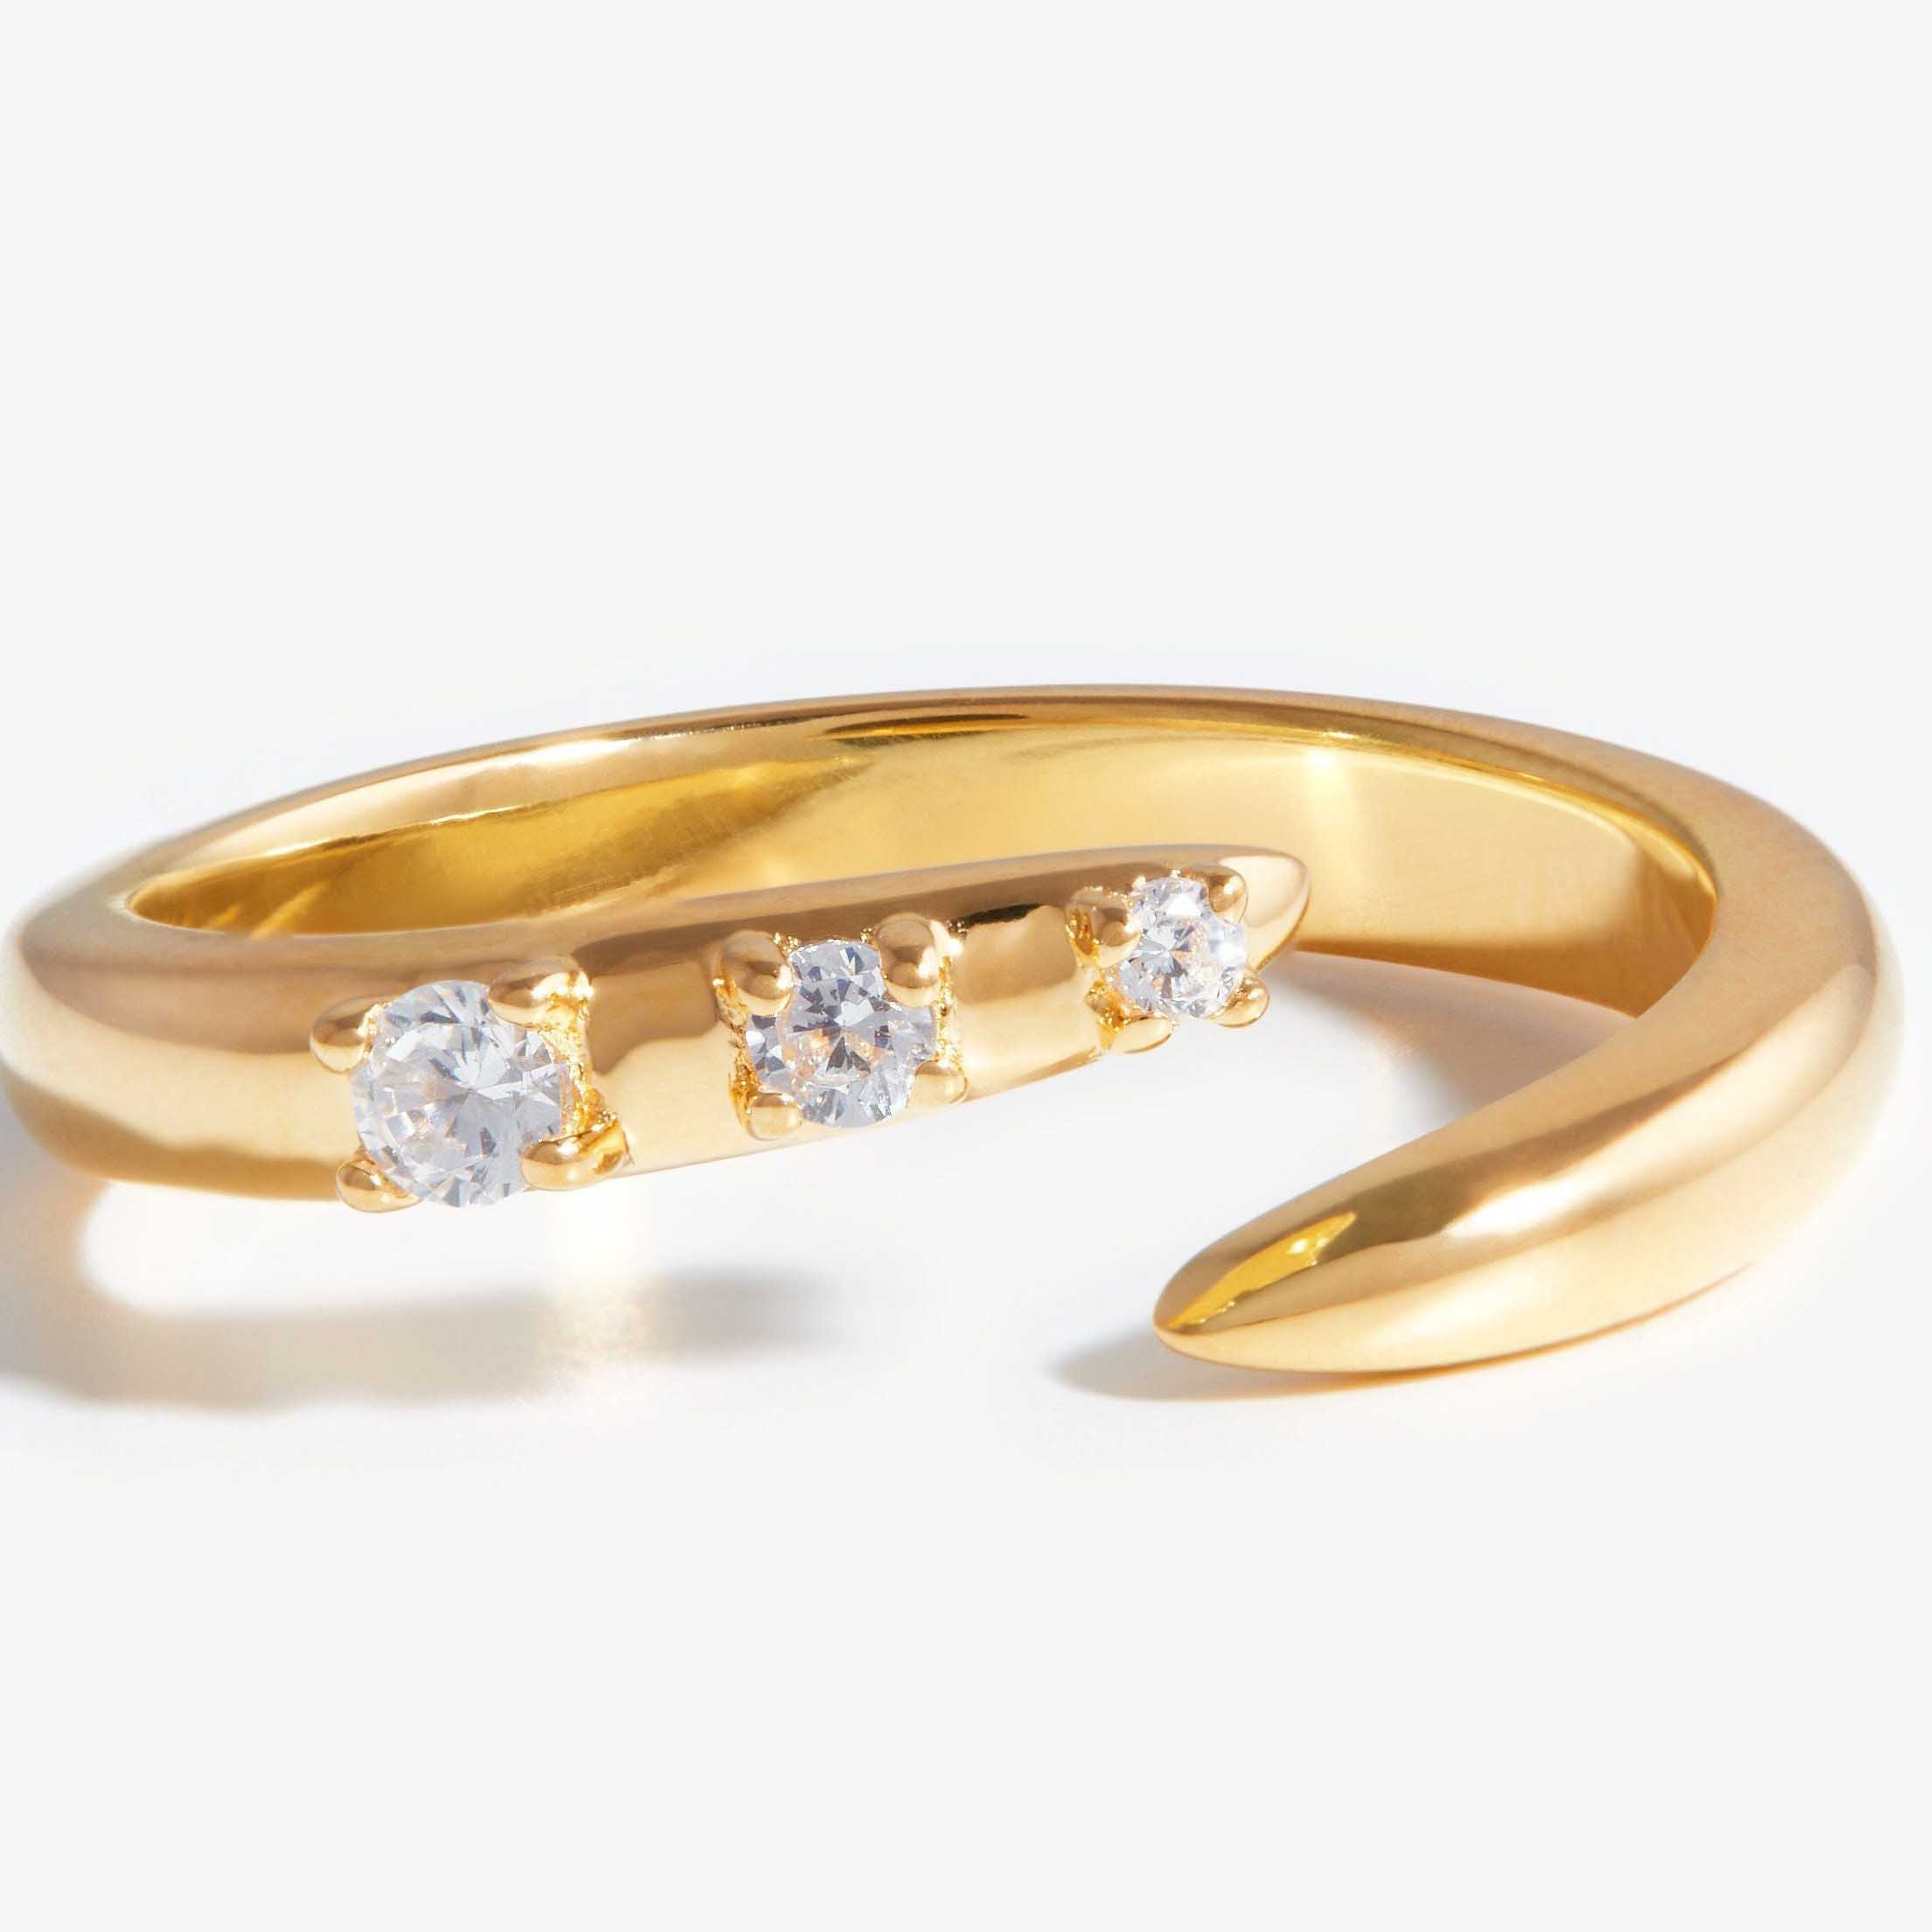 خاتم مفتوح من الزركونيا المكعبة مخصص بالجملة مصنوع من الفضة ولكنه ملون بالذهب.